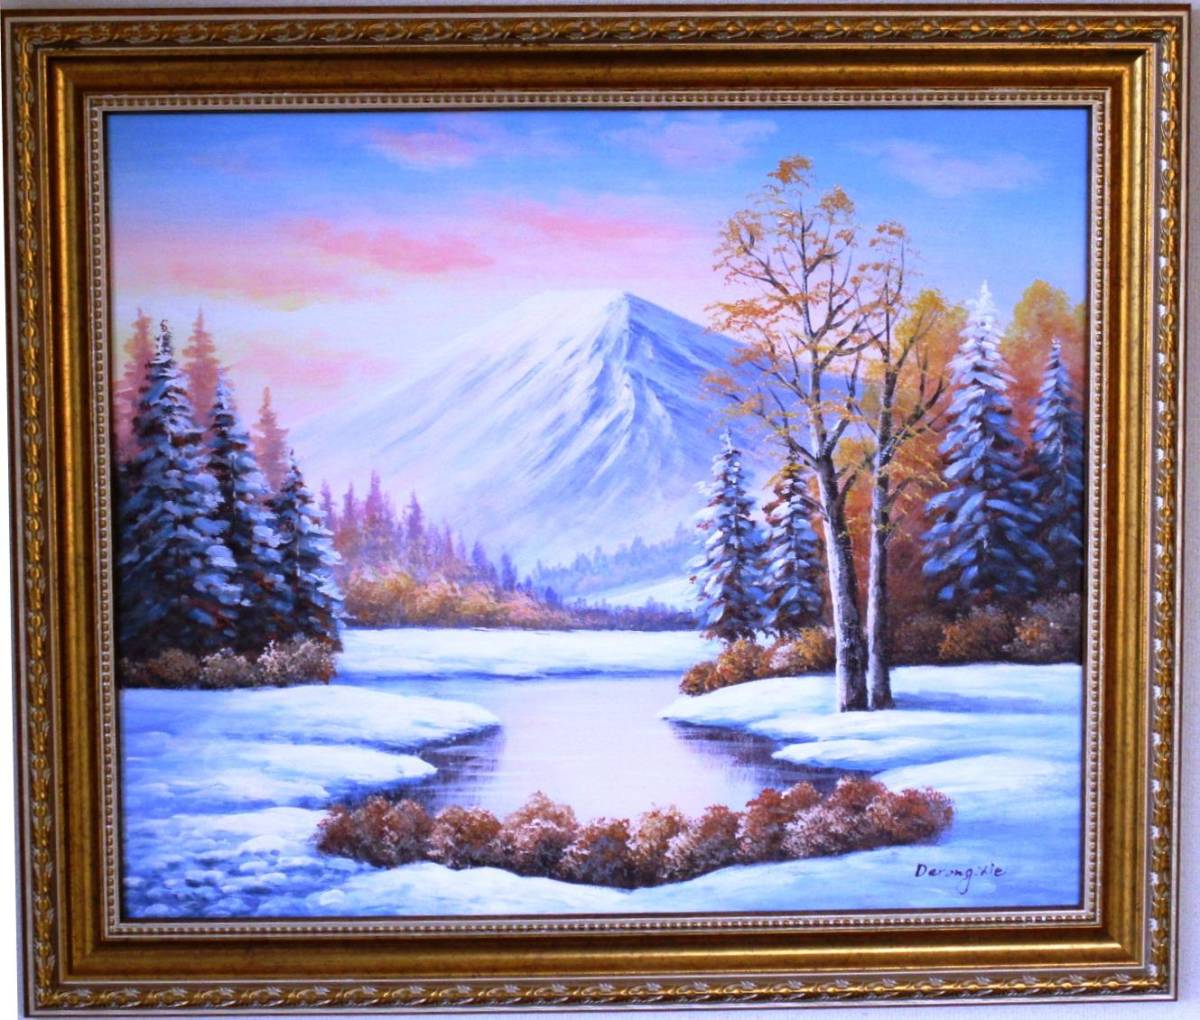 富士山画 油画 风景画 从富士山北麓看富士山 第12号 3-1 请挂在您的客厅里。, 绘画, 油画, 自然, 山水画